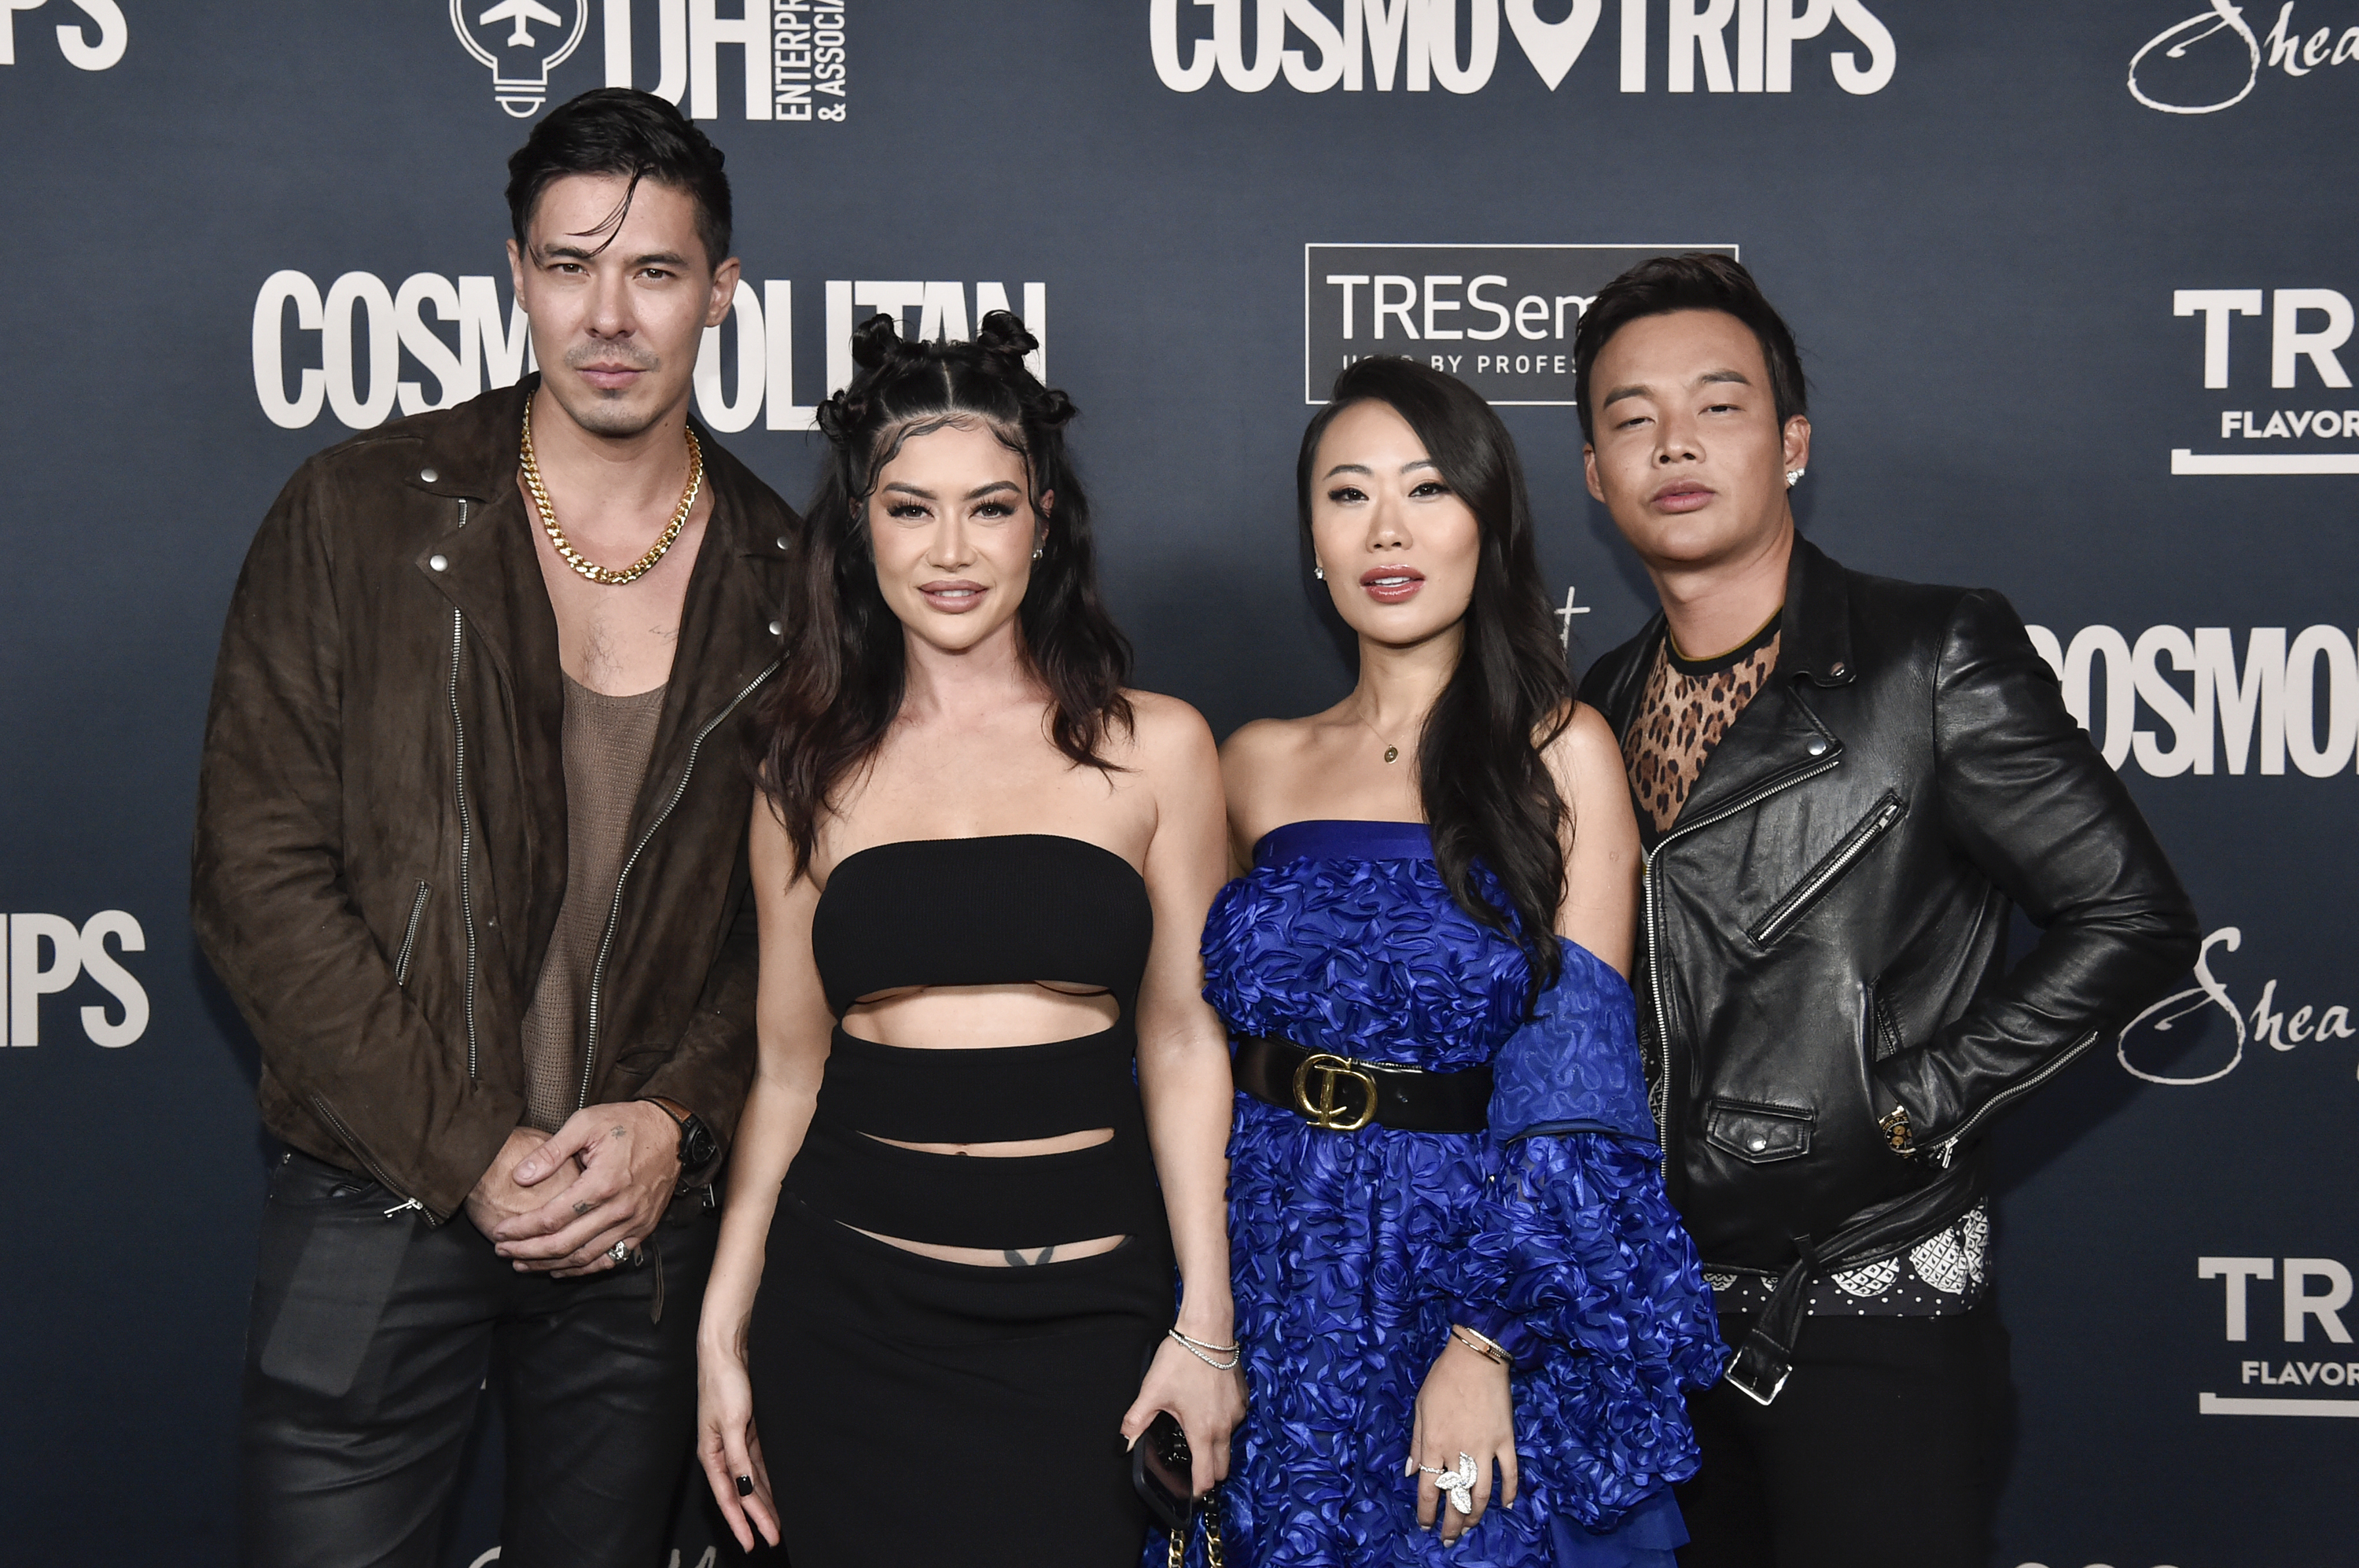 Lewis Tan et Kim Lee, avec Kelly Mi Li et Kane Lim lors de la célébration de Cosmopolitan pour le lancement de CosmoTrips et Fêtes au Skybar en septembre 2022, à West Hollywood. | Source : Getty Images